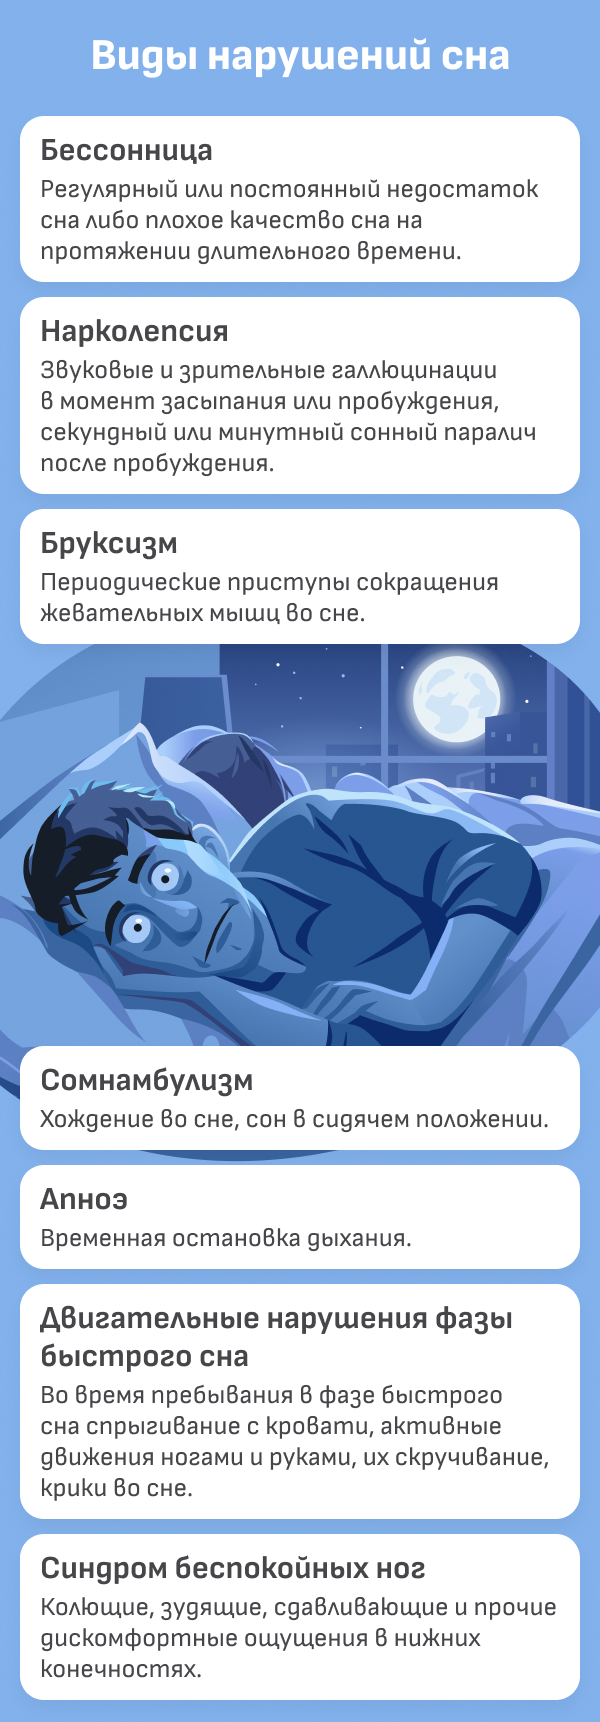 Связь между стрессом и плохим сном